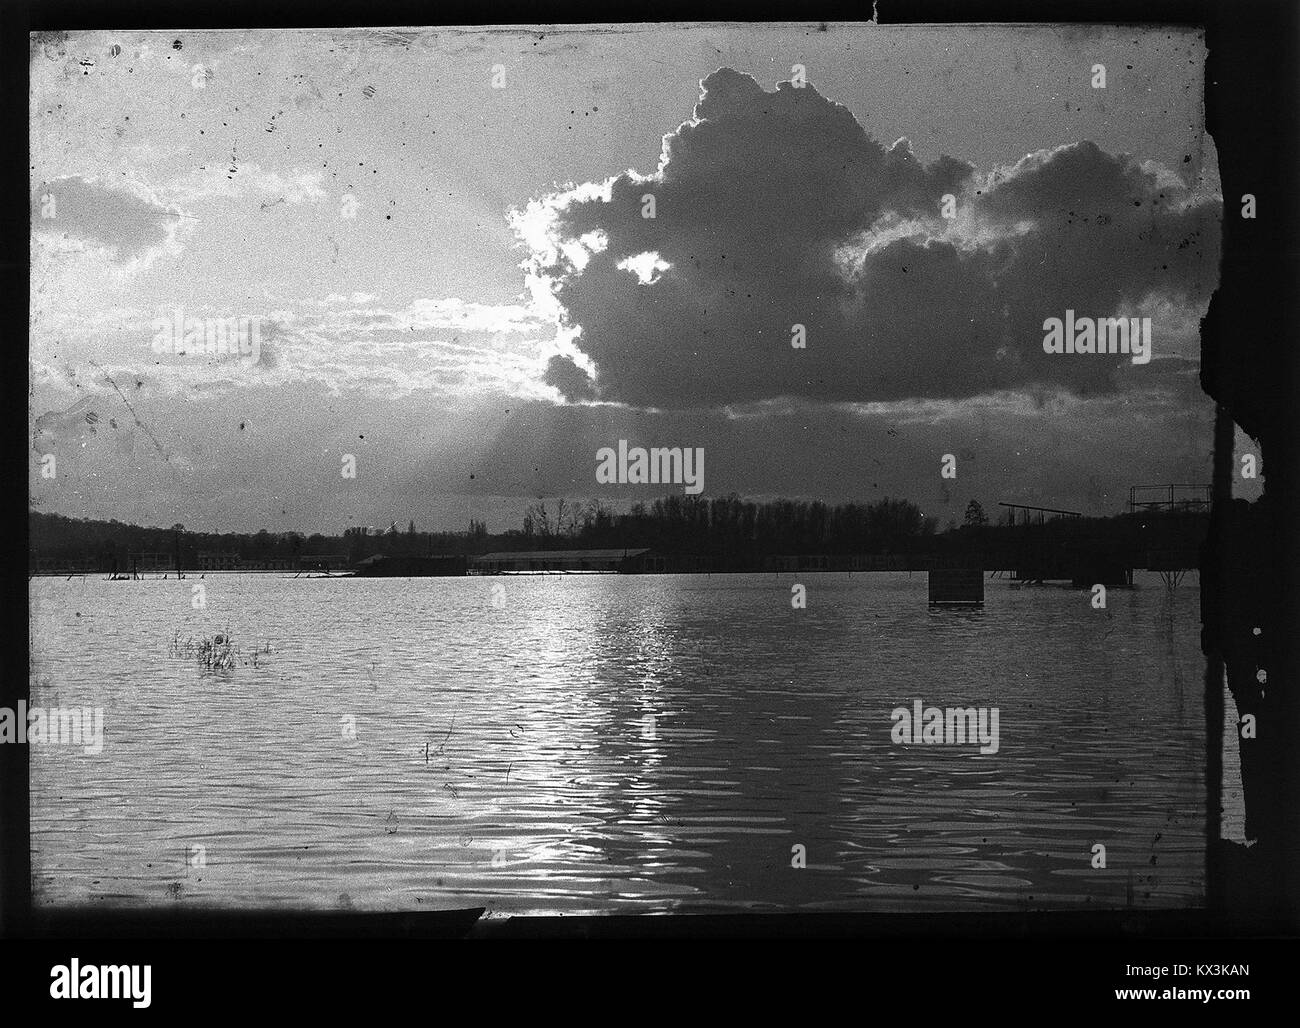 (Coucher de soleil sur une étendue d'eau) - Fonds Berthelé - 49Fi1514 Stock Photo